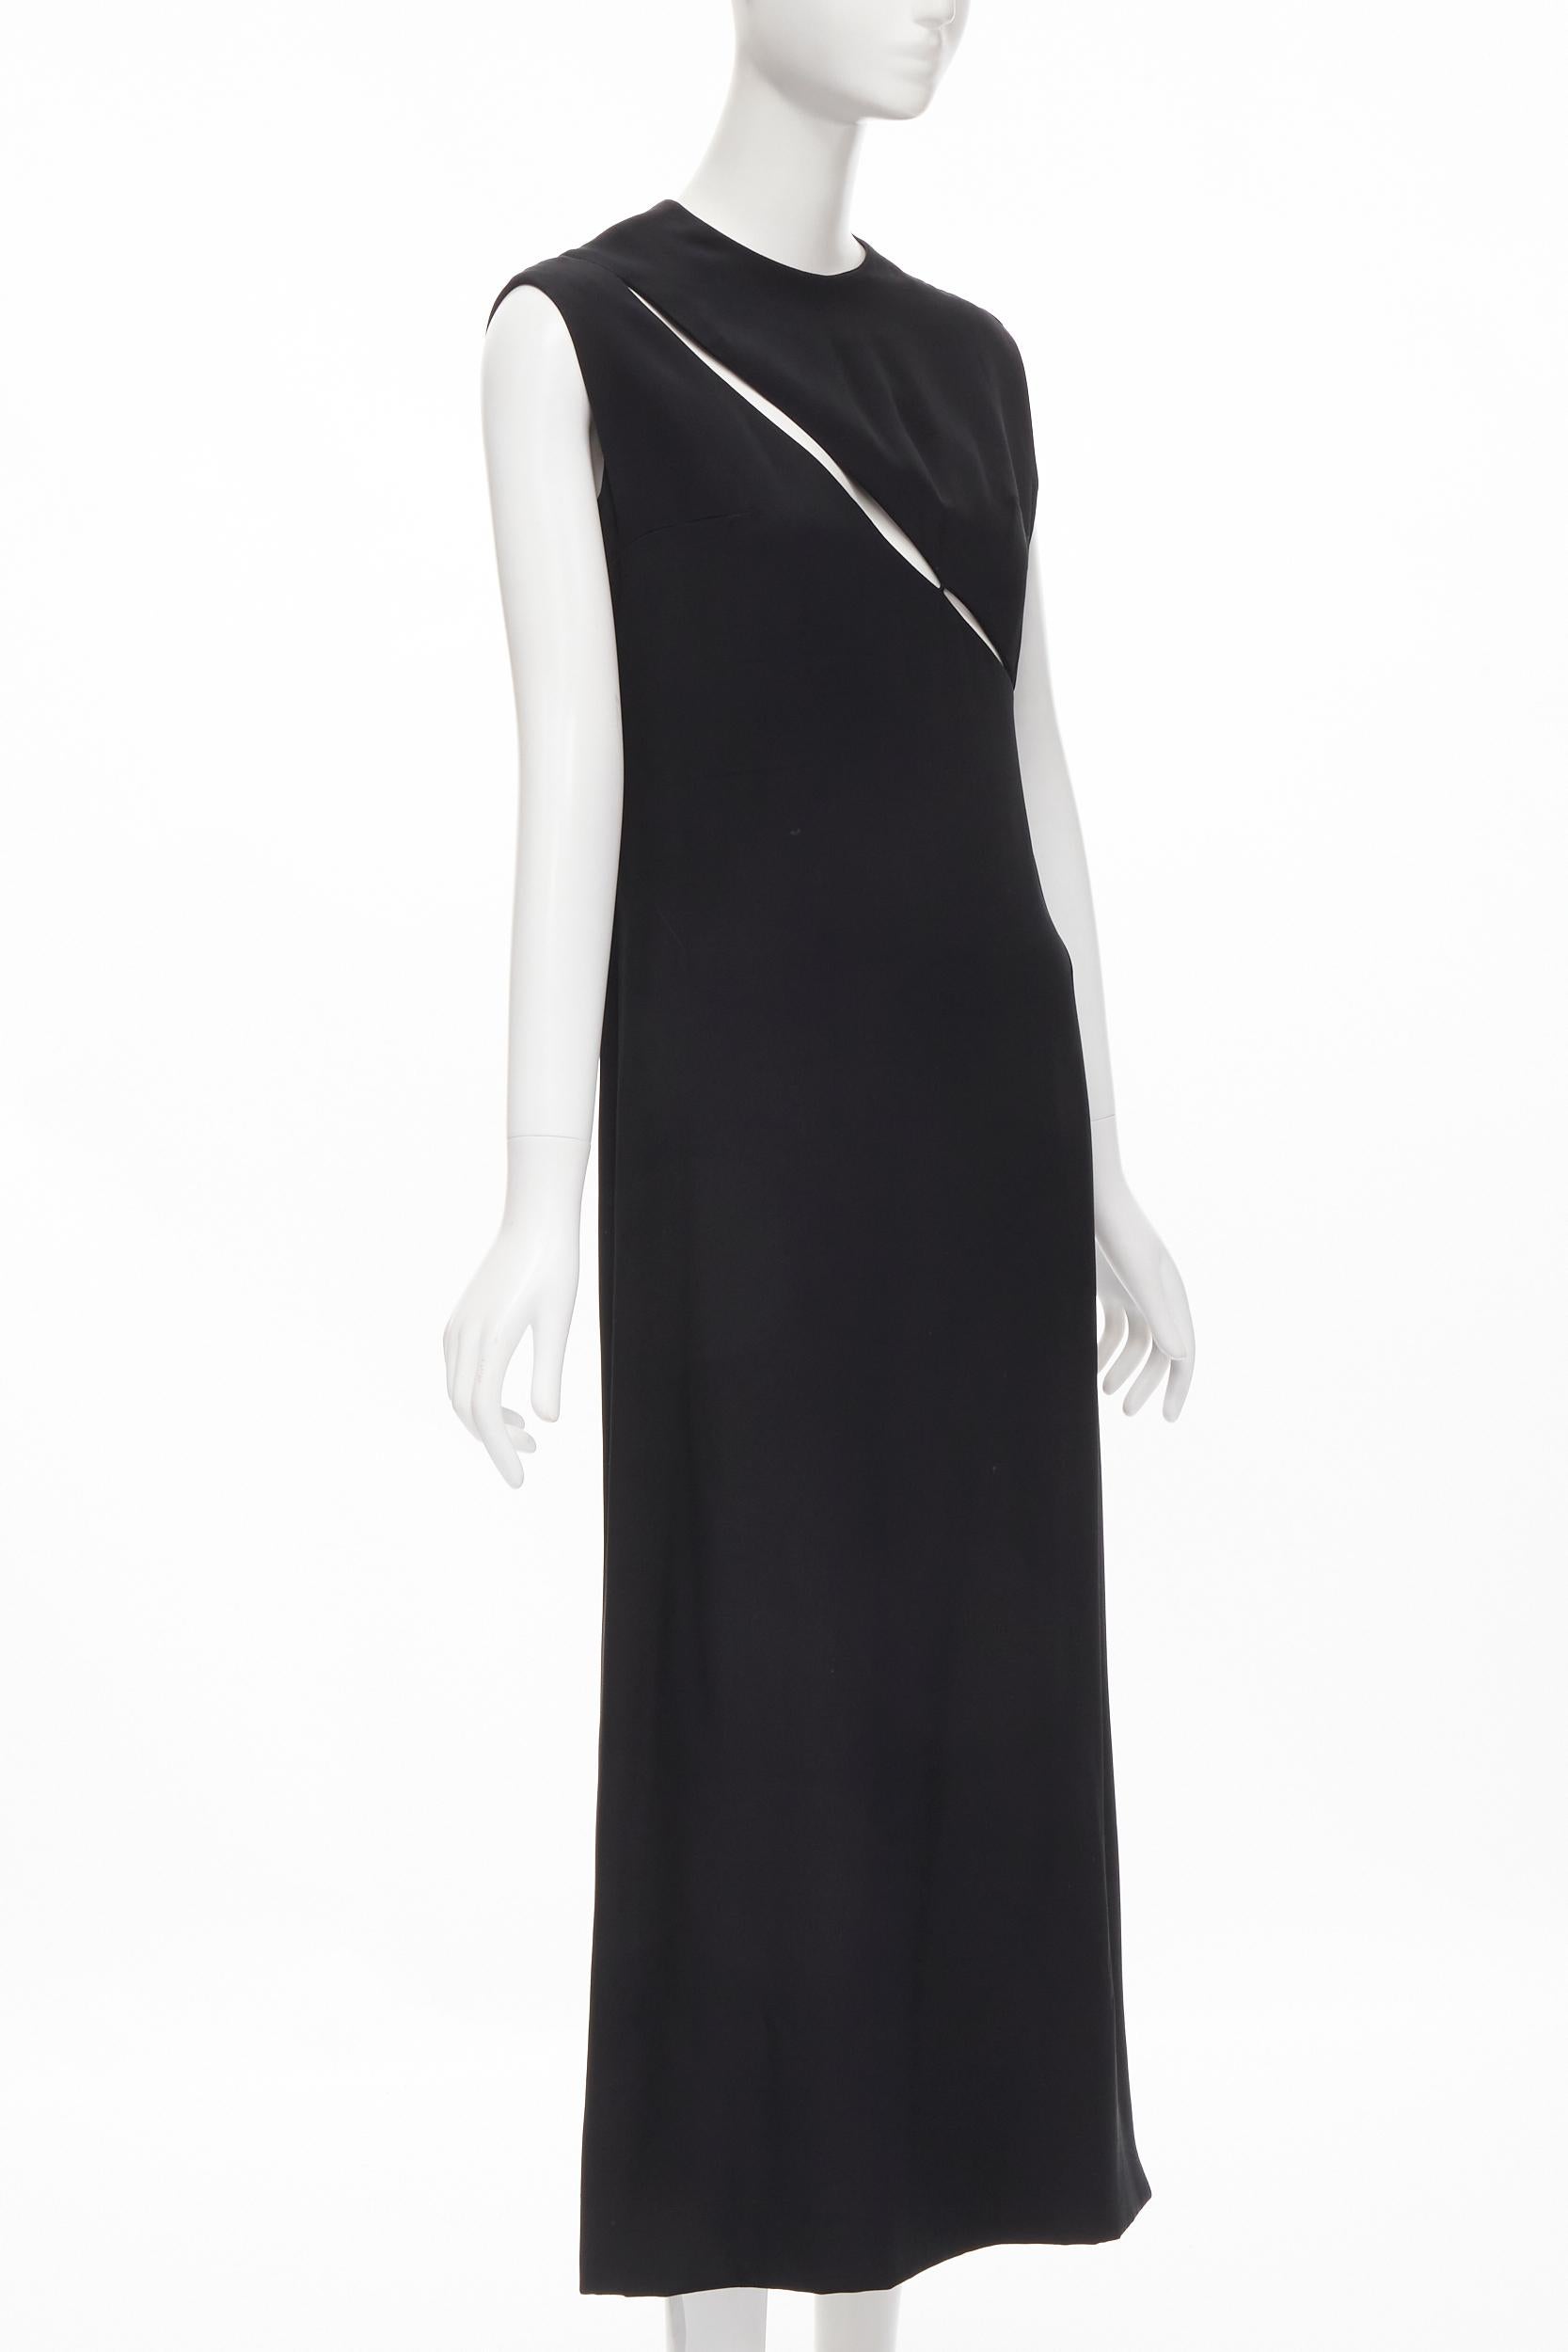 Black MADAME GRES Haute Couture Paris 1972 black crepe slash slit cut out dress M For Sale